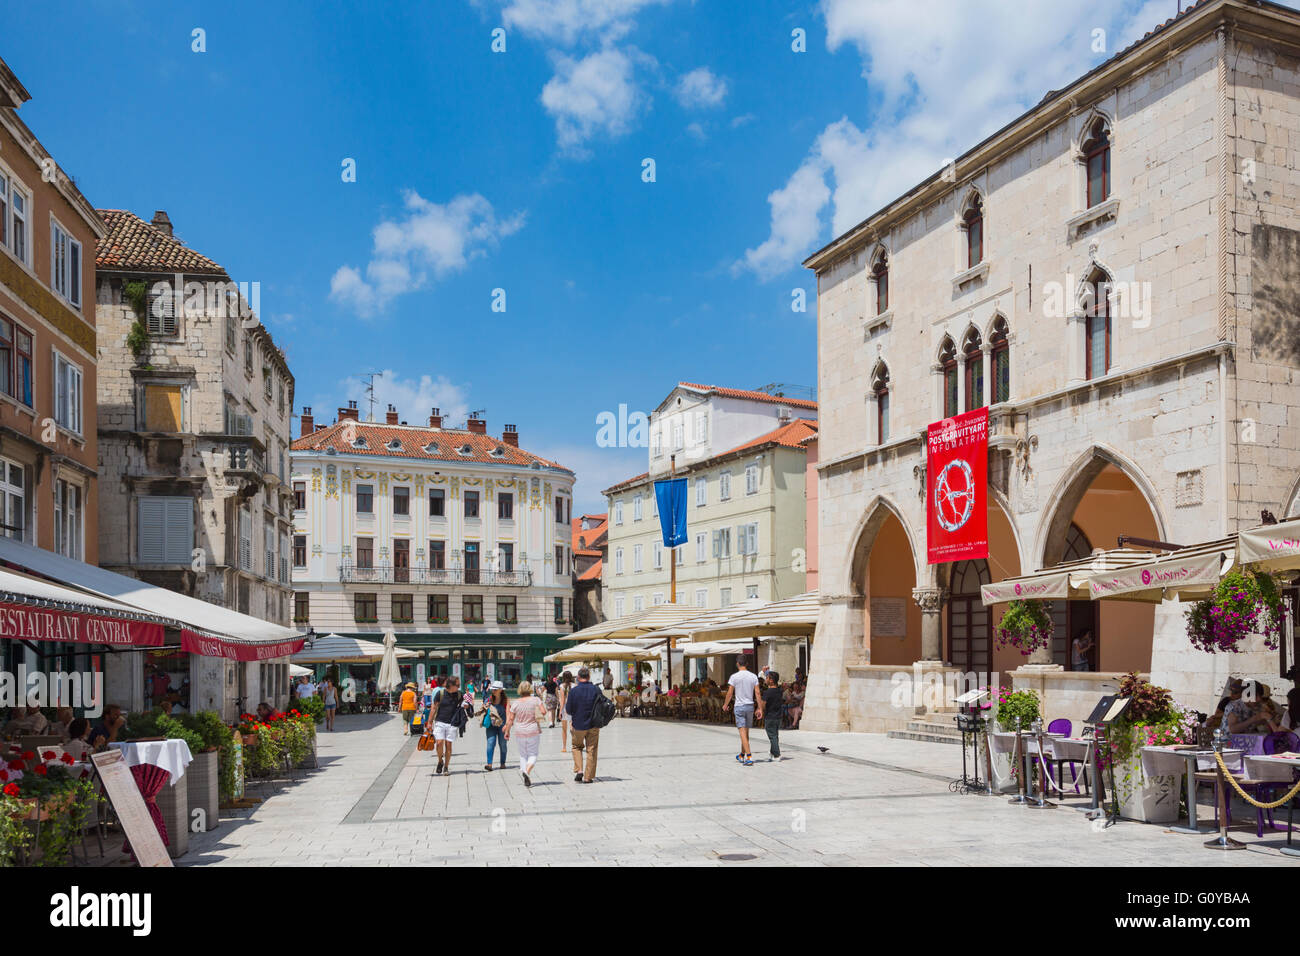 Split, la costa Dálmata, Croacia. La plaza del pueblo. La bandera roja cuelga desde el siglo XV Ayuntamiento renacentista. Foto de stock